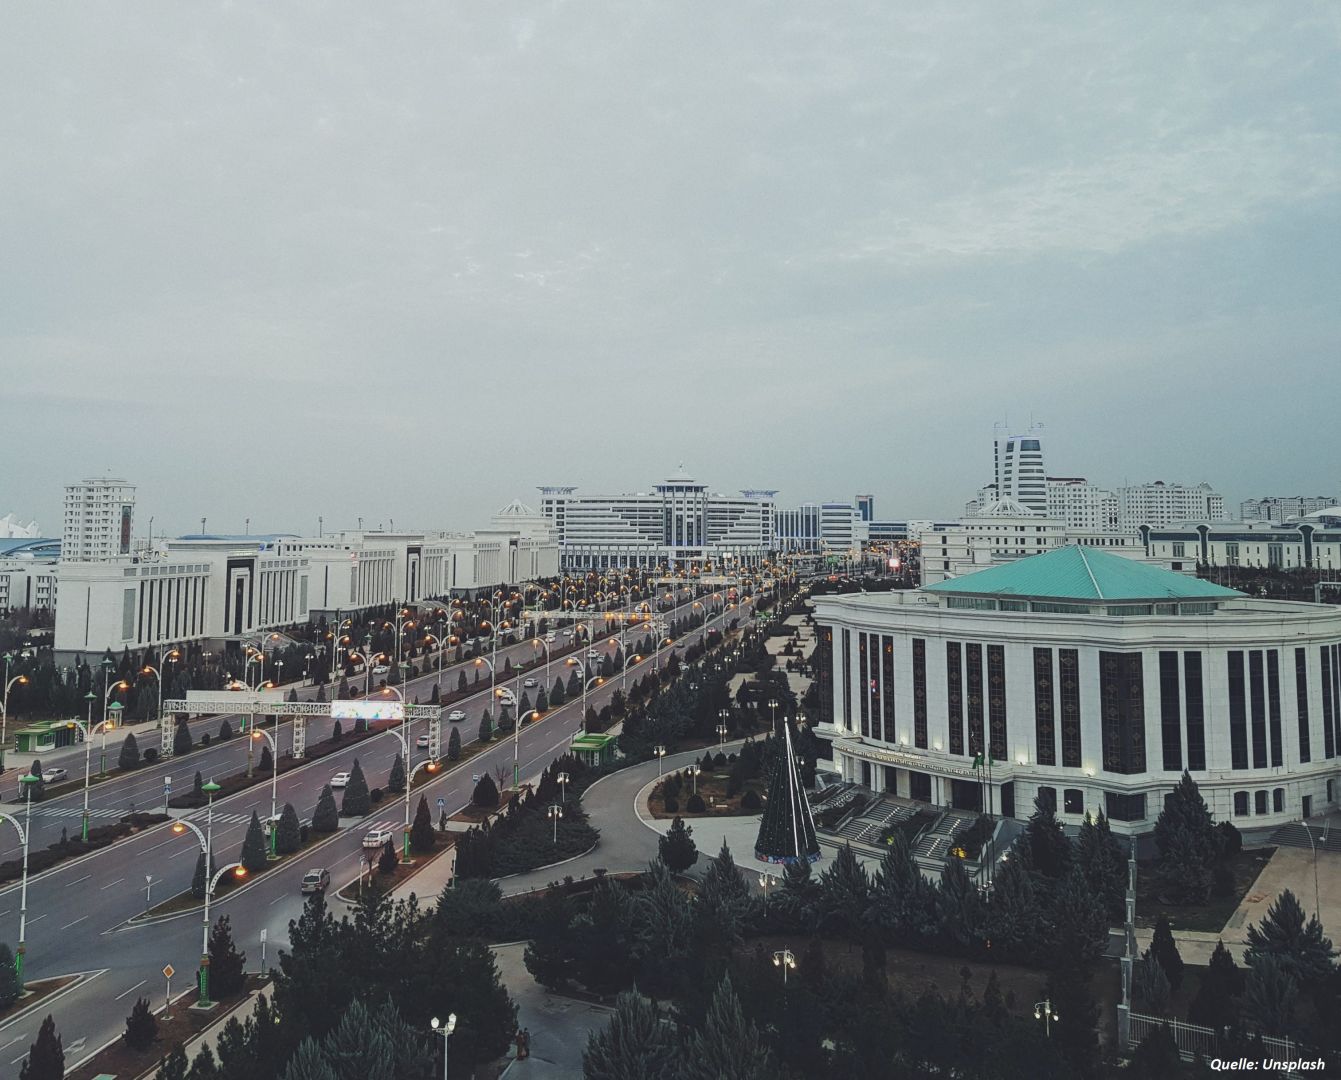 Bevölkerung Turkmenistans hat 7 Millionen überschritten